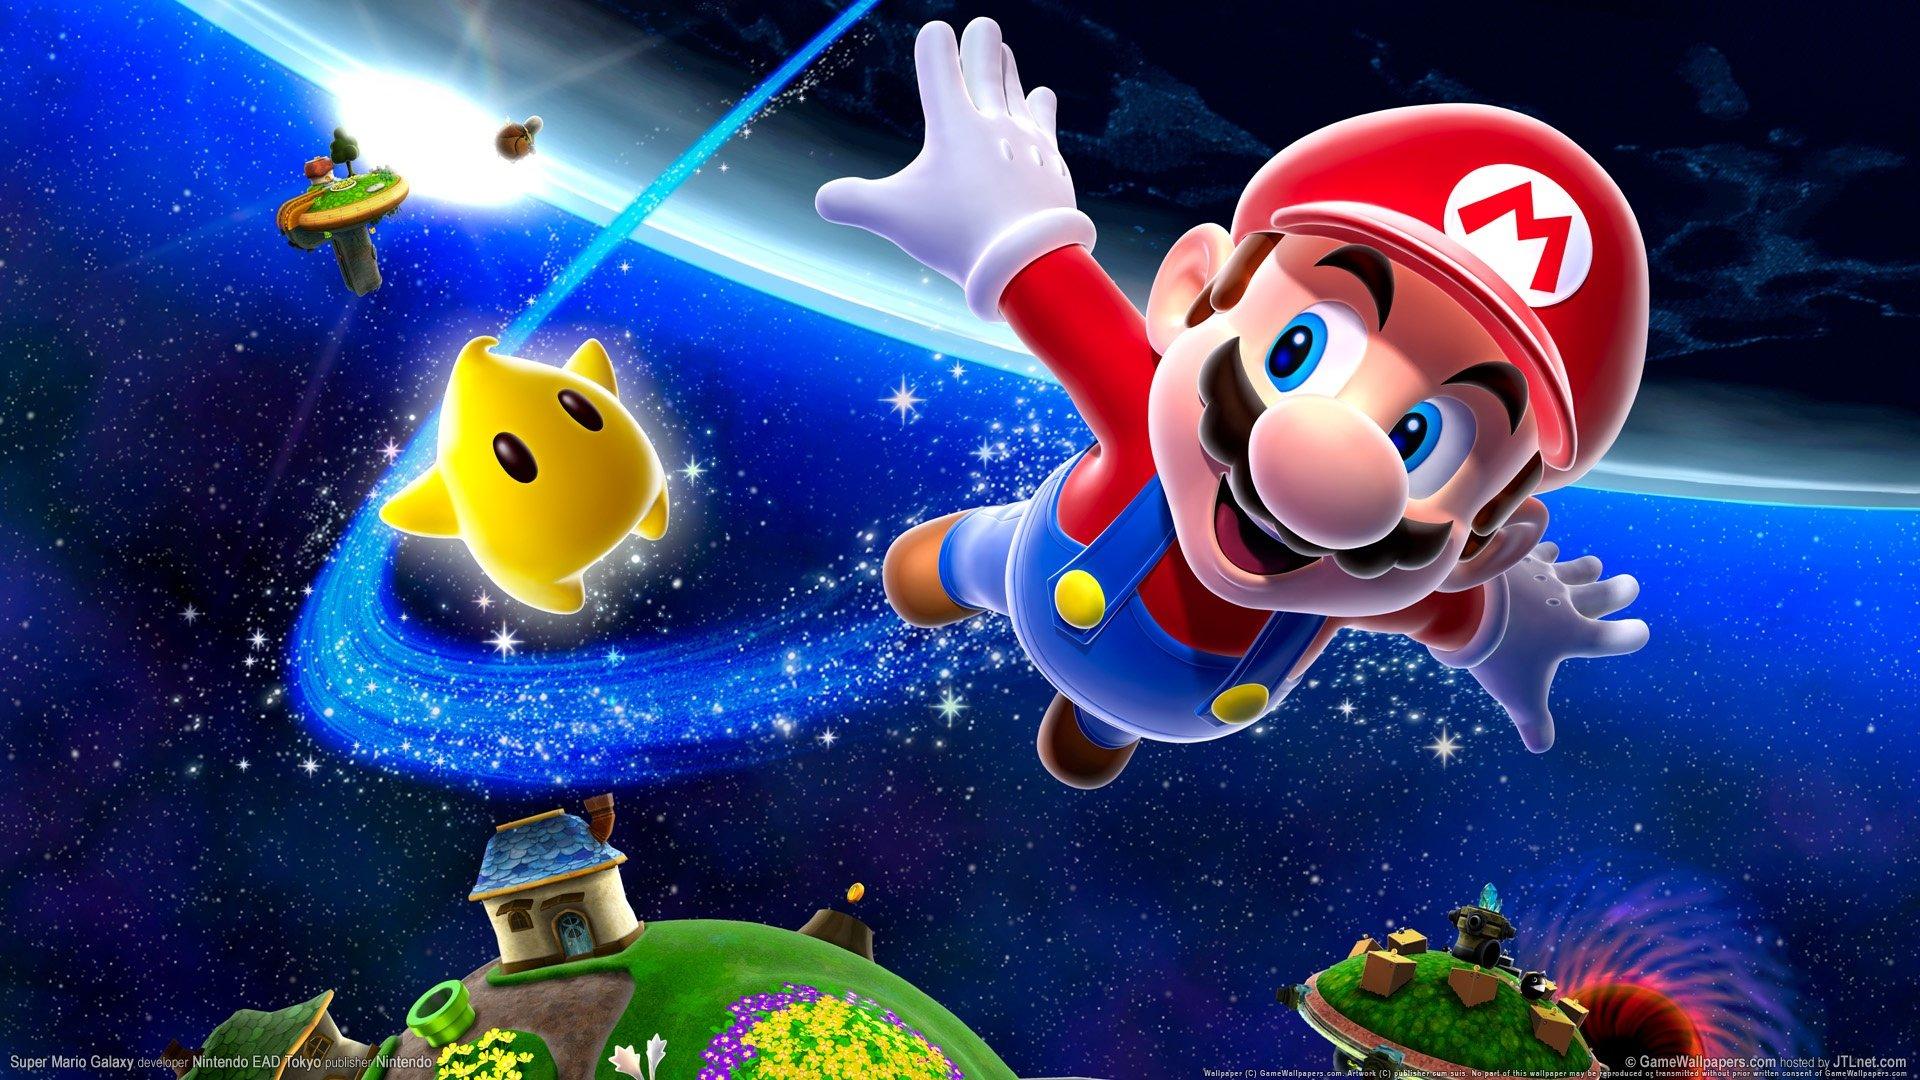 Hình nền siêu sao Mario Galaxy đầy sắc màu và tươi vui sẽ khiến bạn cảm nhận được sức mạnh và niềm hạnh phúc khi chinh phục vũ trụ cùng Mario. Mỗi chi tiết trên hình nền đều thể hiện được tính cách của nhân vật, màu sắc ấn tượng và khả năng phá vỡ hình tượng truyền thống của trò chơi.